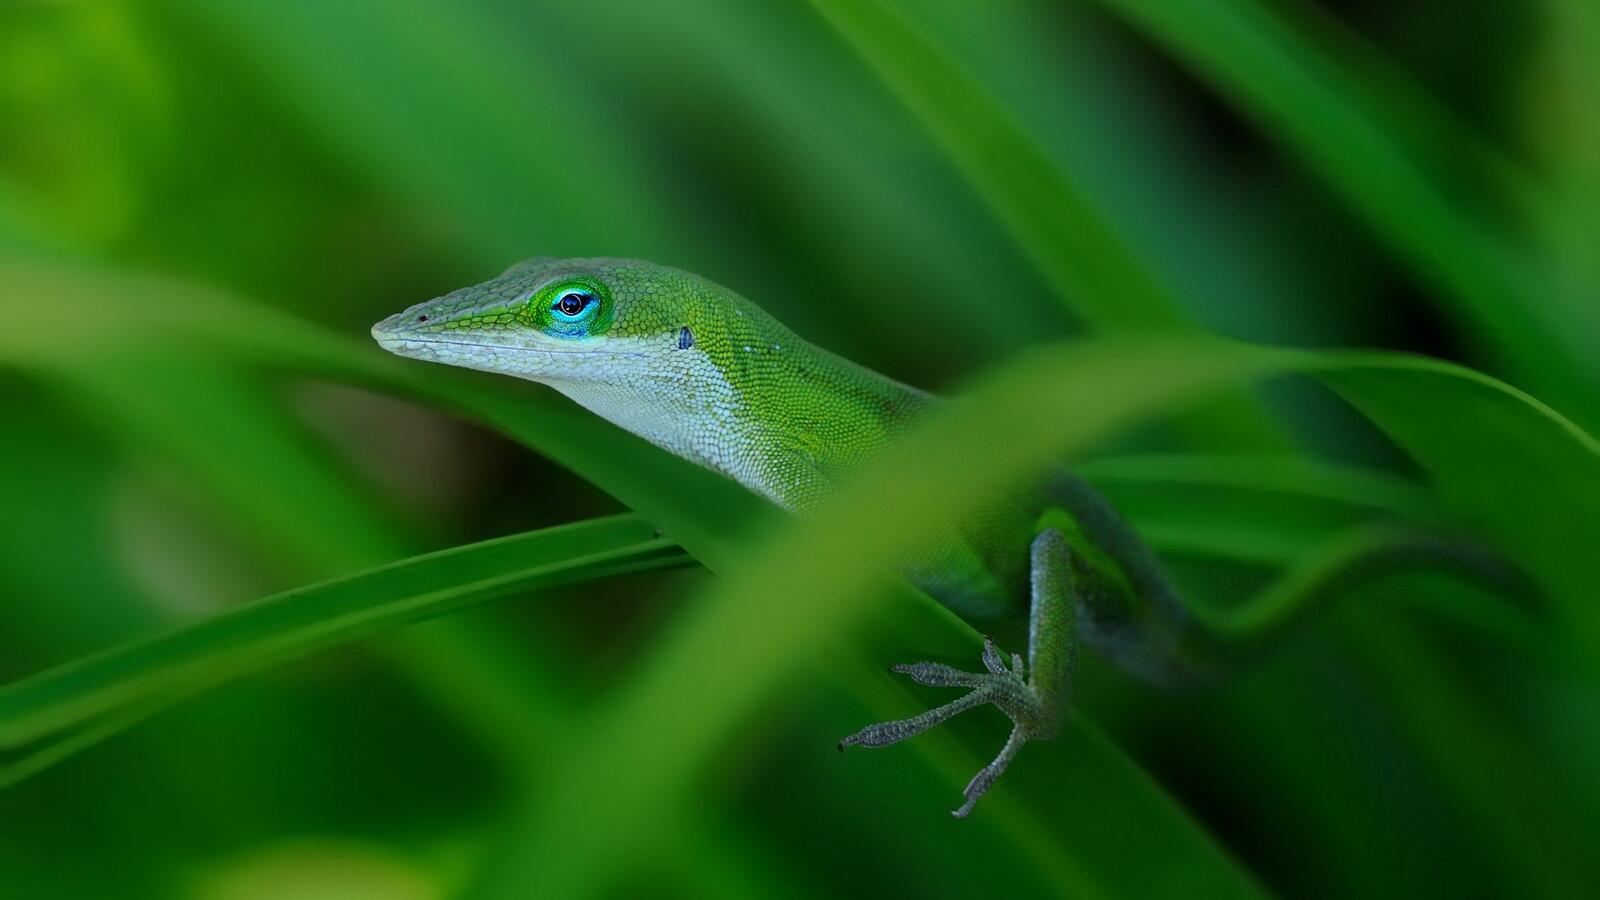 Wallpapers lizard grass green on the desktop